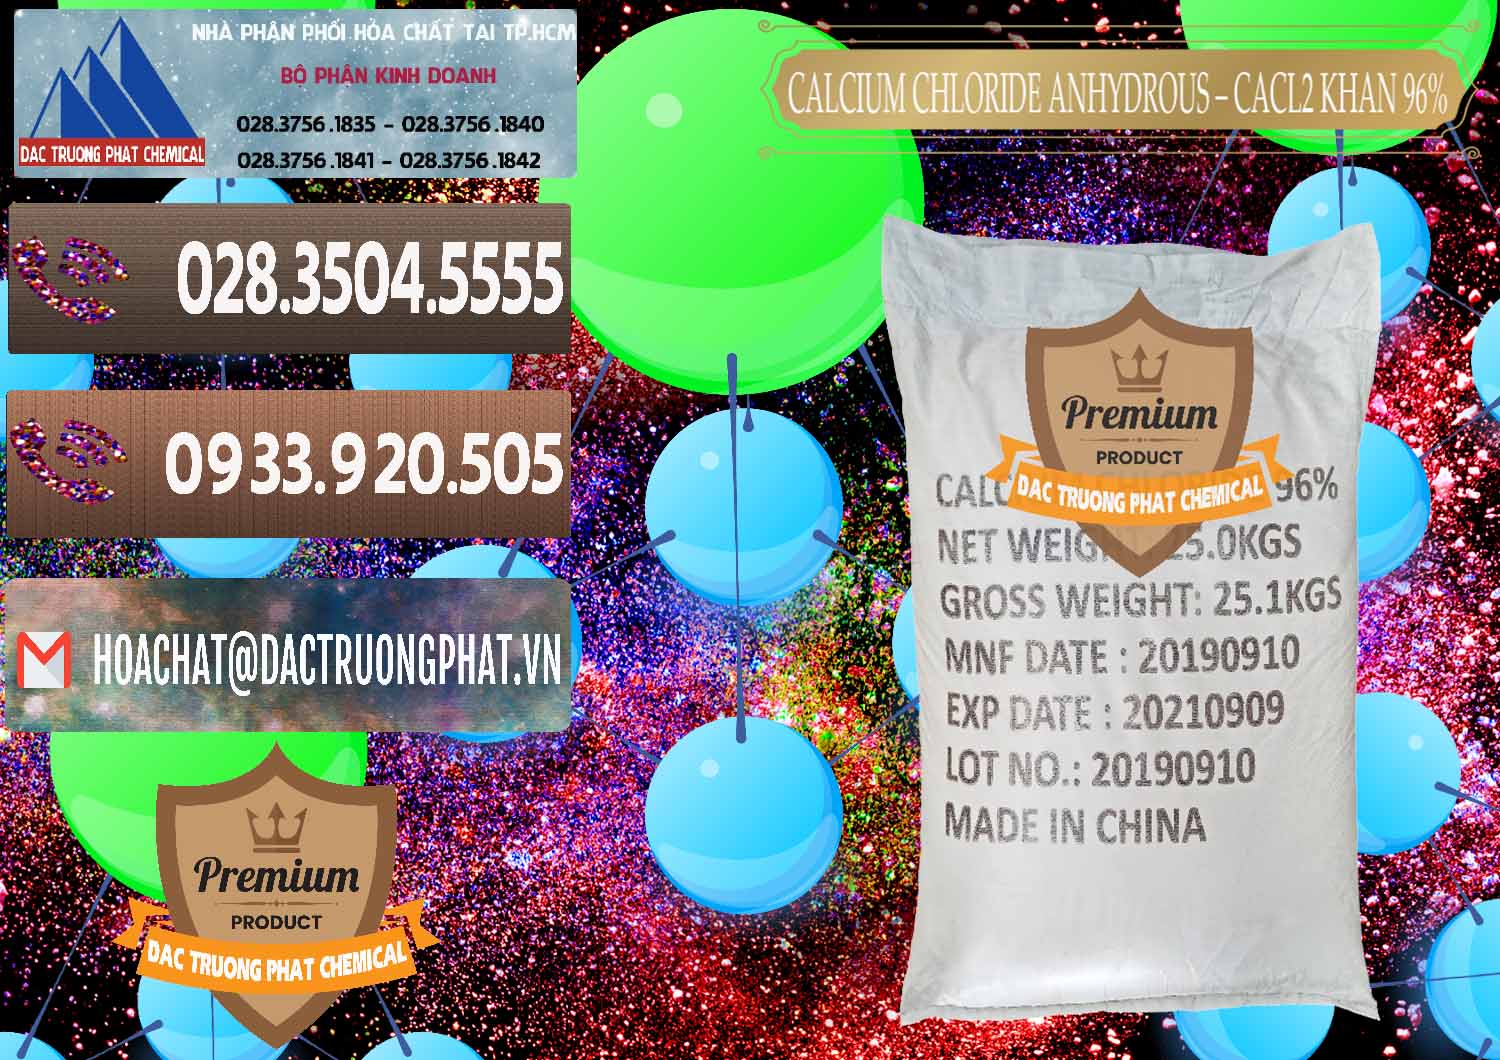 Nơi chuyên phân phối & bán CaCl2 – Canxi Clorua Anhydrous Khan 96% Trung Quốc China - 0043 - Đơn vị cung cấp _ bán hóa chất tại TP.HCM - hoachatviet.net